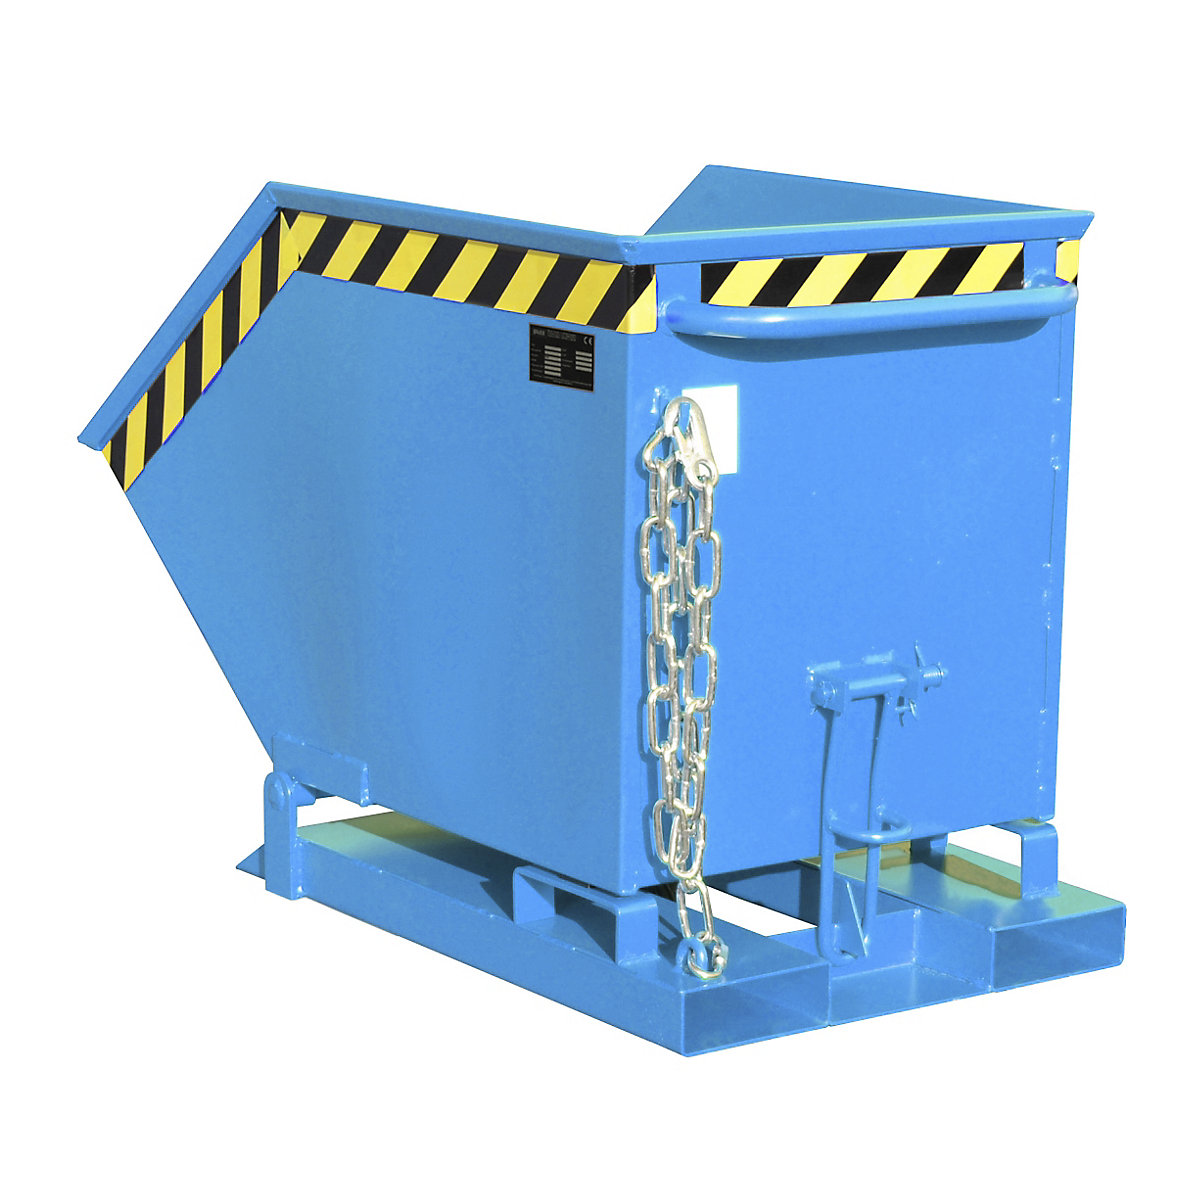 Billenőtartály összecsukó-mechanizmussal – eurokraft pro, doboz alakú, térfogat 0,25 m³, kék RAL 5012-9